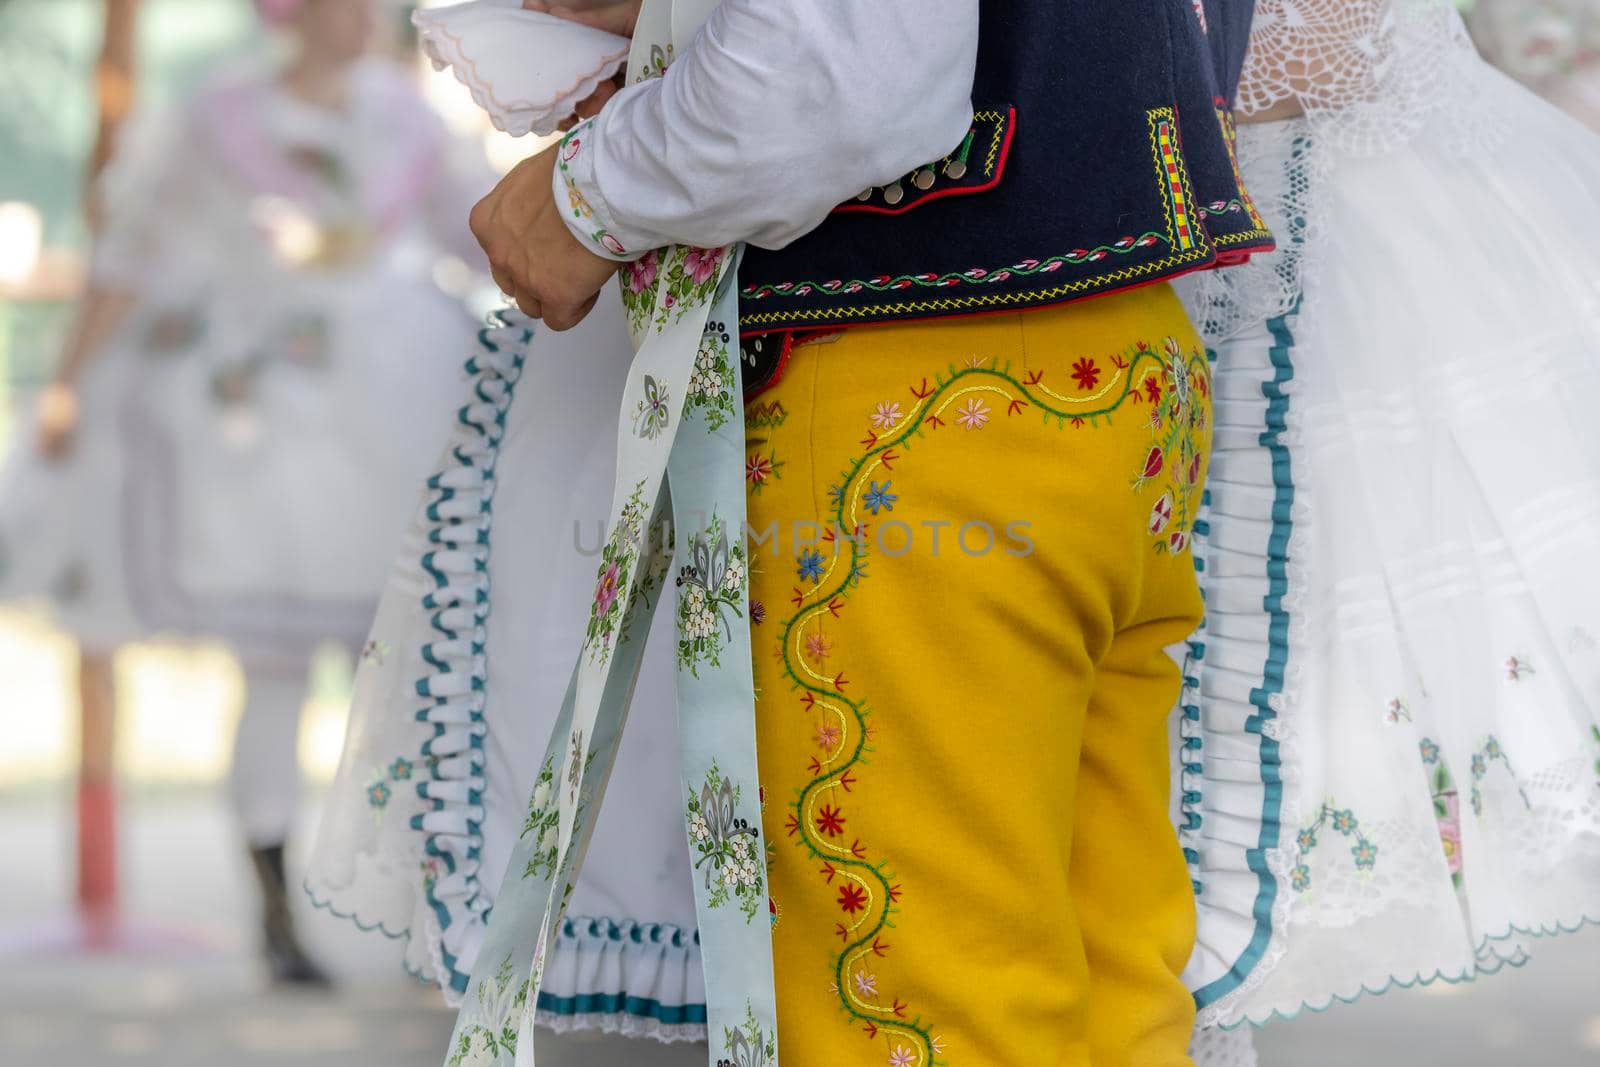 Detail of folk costume, Rakvice, Southern Moravia, Czech Republic by phbcz